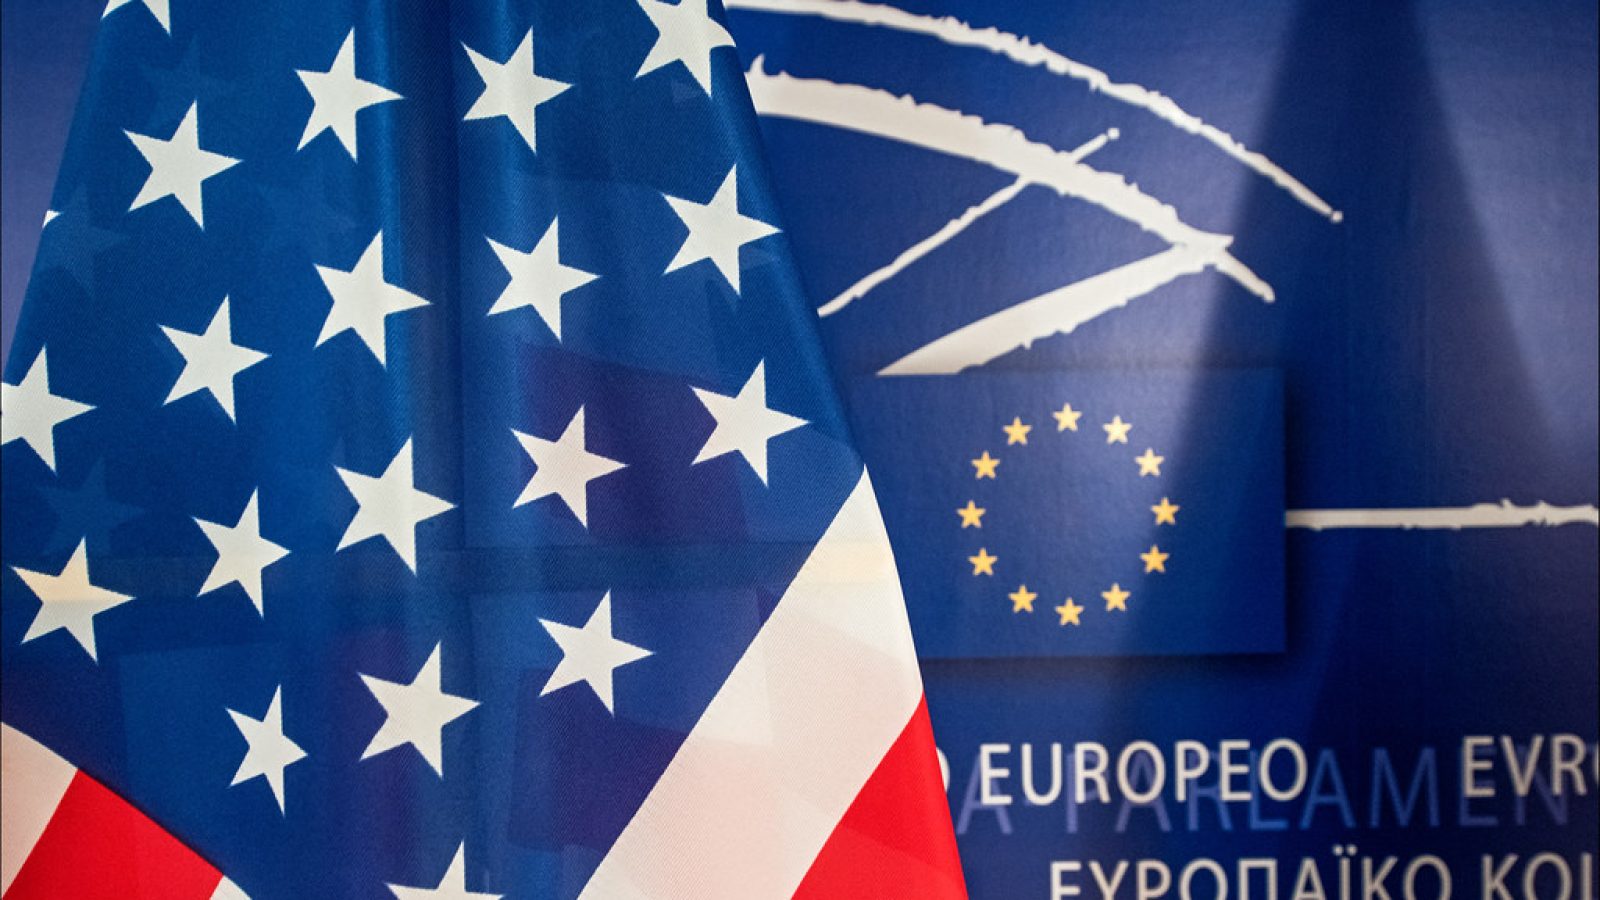 American flag next to European Union background